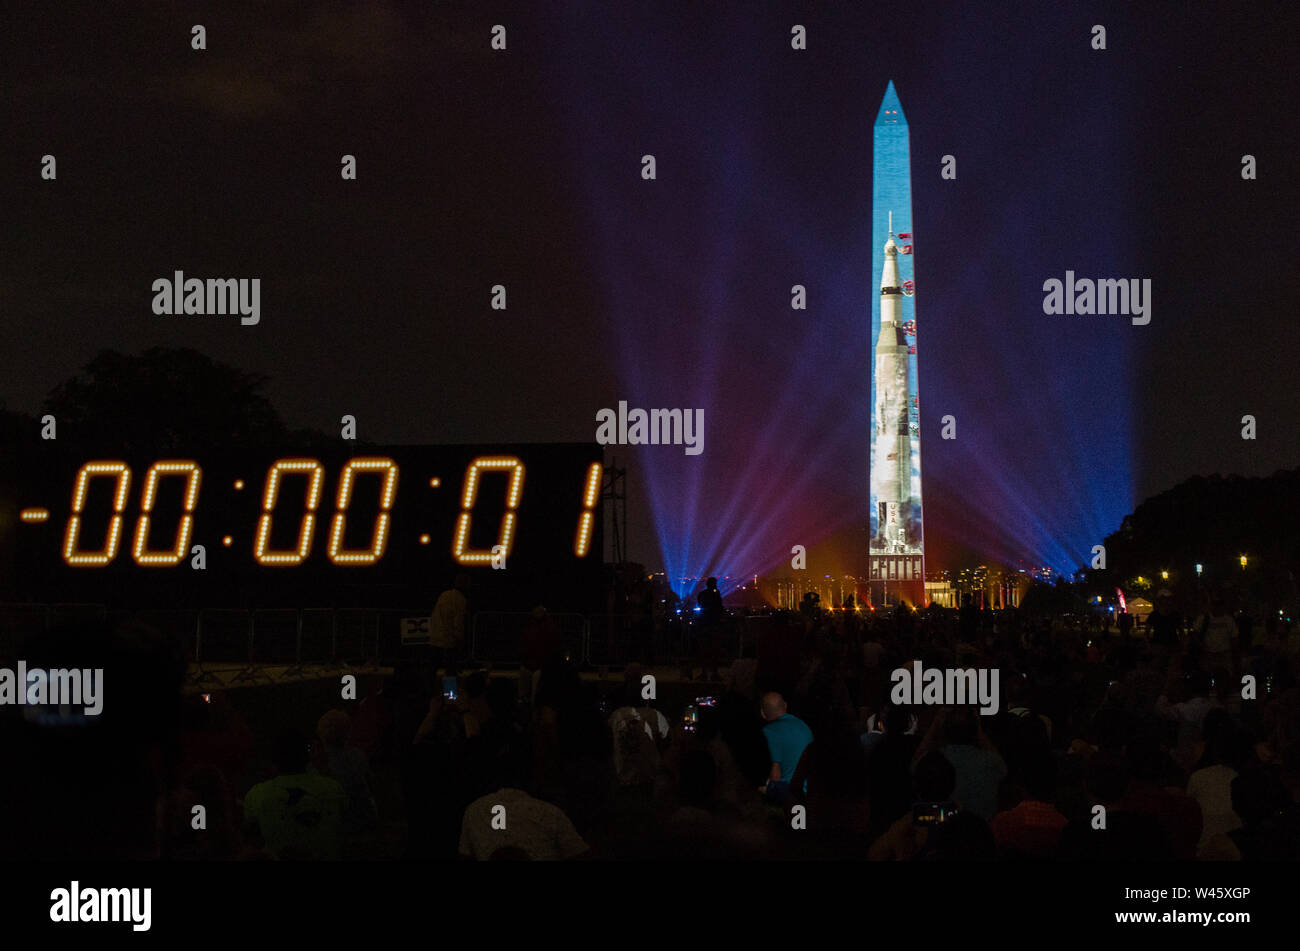 Washington DC, USA. Juli 2019 19. Mit dem Countdown Uhr nähert sich Null, Menschenmassen watch Apollo 11 Saturn V starten Aufnahmen auf das Washington Monument projiziert. Quelle: Tim Thulson/Alamy Leben Nachrichten. Stockfoto